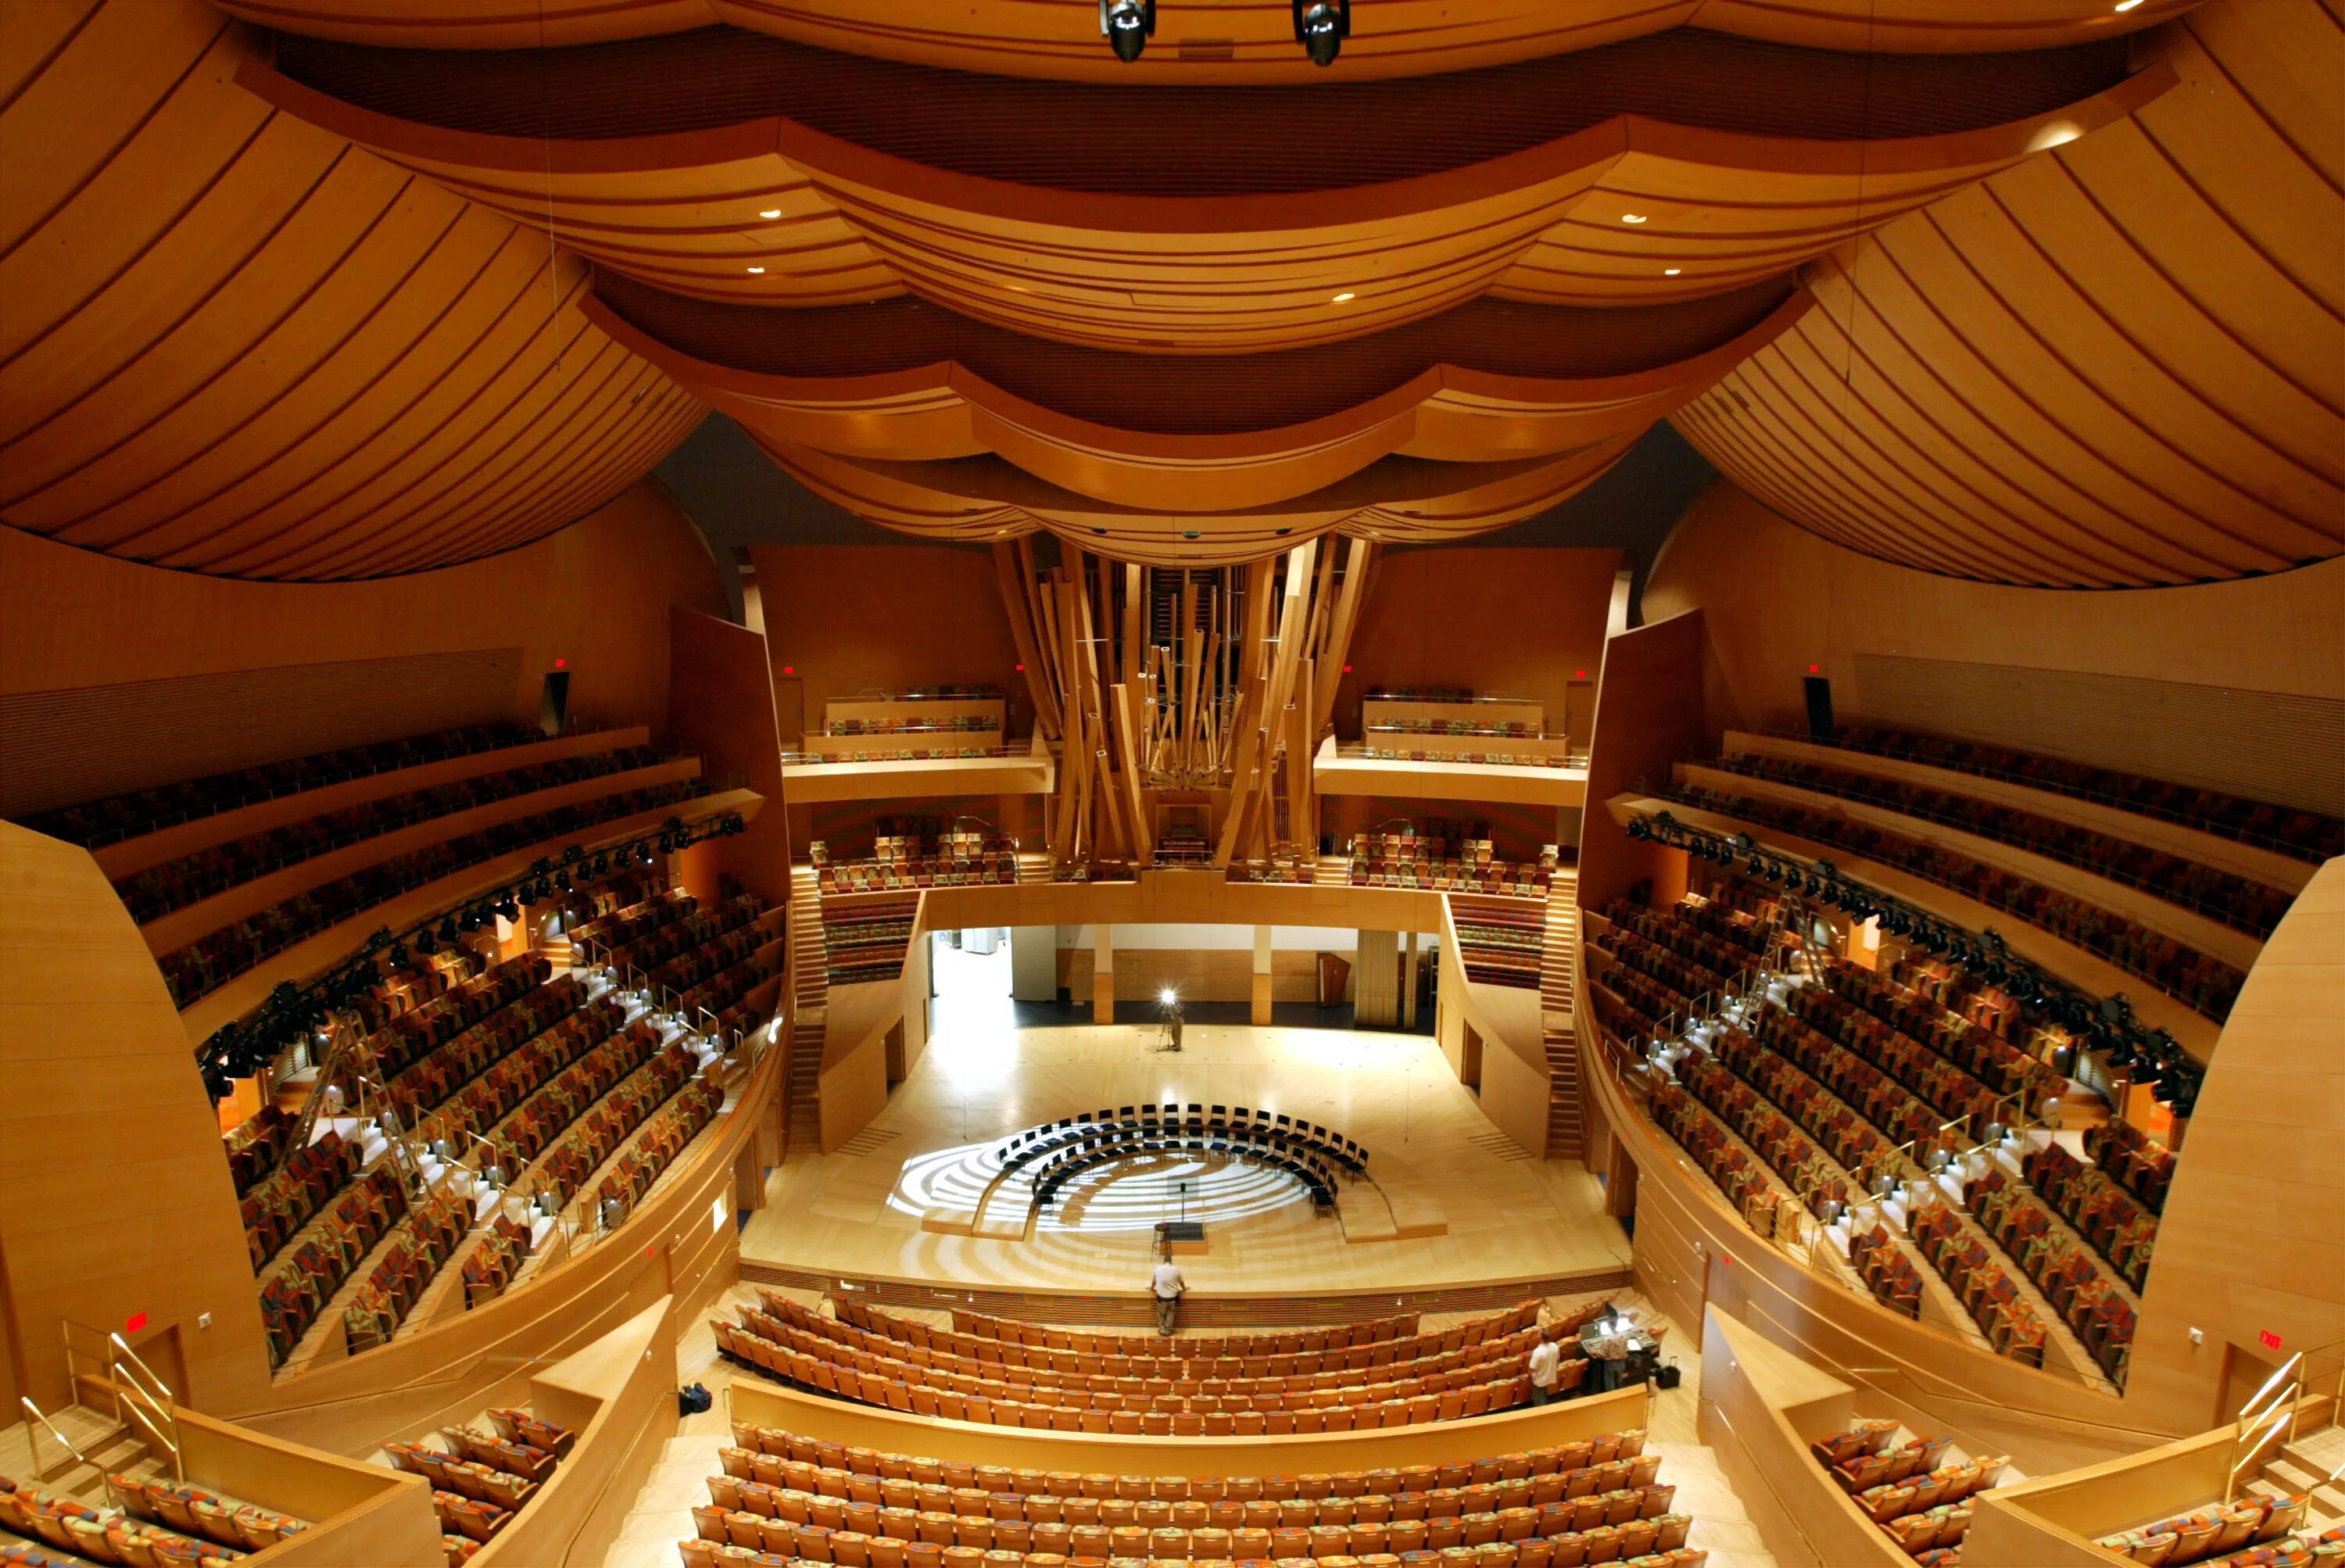 Концертный зал диснея. Концертный зал Уолта Диснея в Лос-Анджелесе, США. Walt Disney концертный зал (Лос Анджелес). Фрэнк Гери концертный зал Уолта Диснея. Зал Уолта Диснея (Лос-Анджелес, США, 2003 Г.).